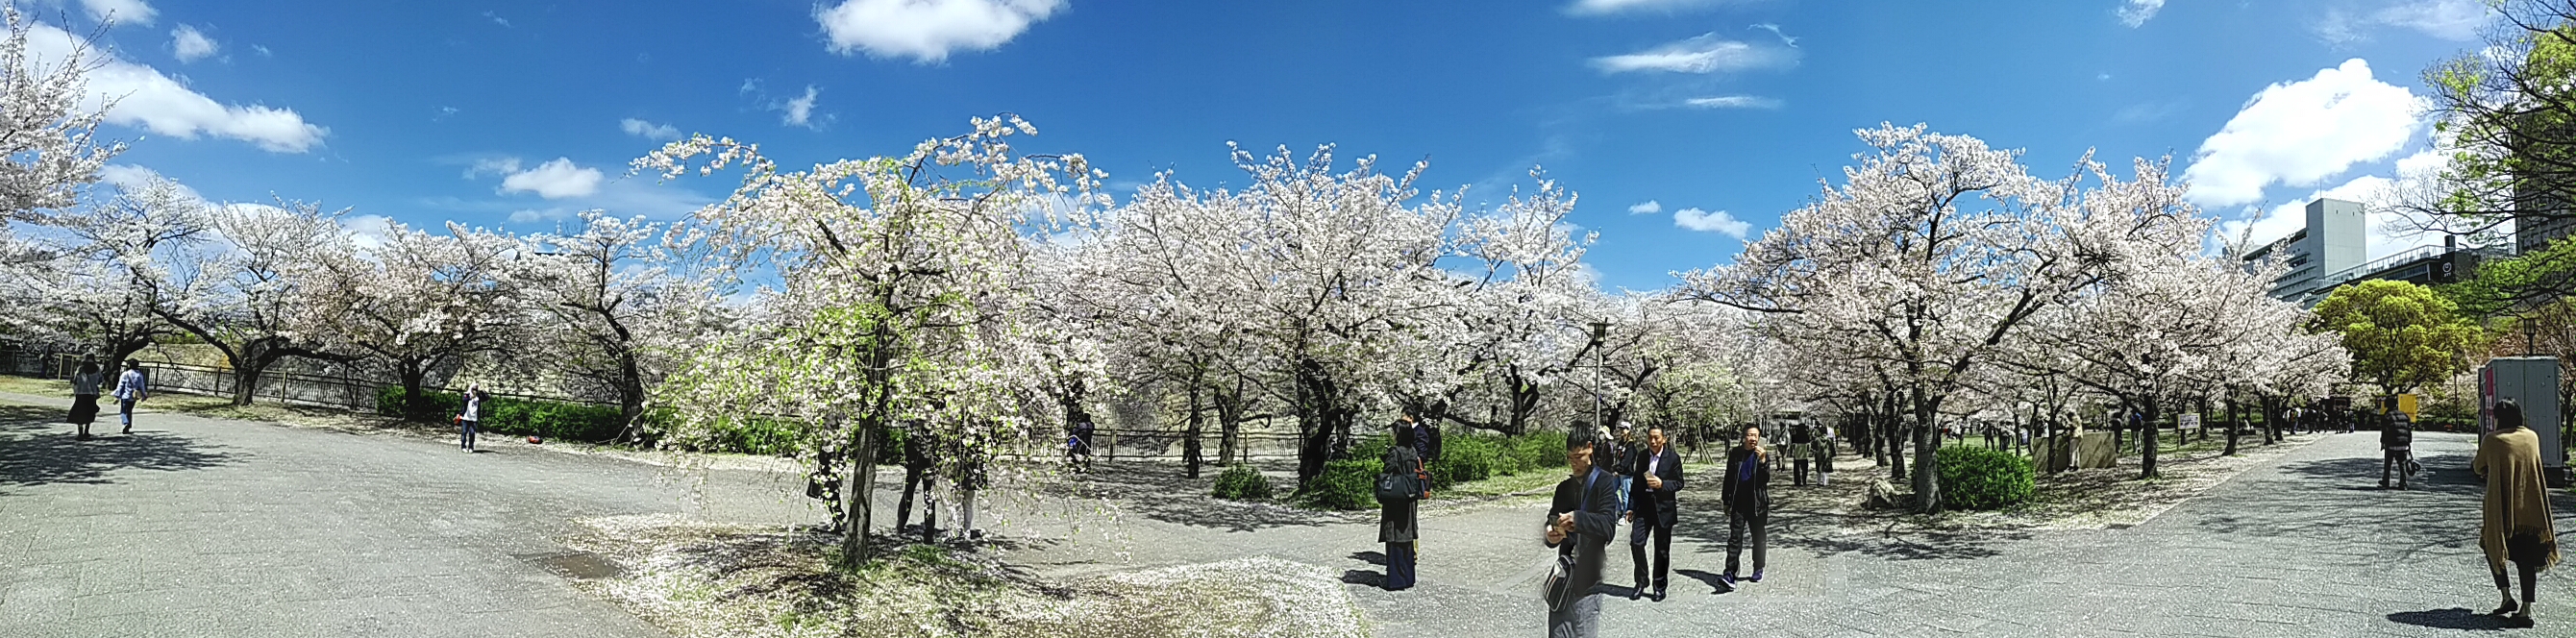 桜's image 1